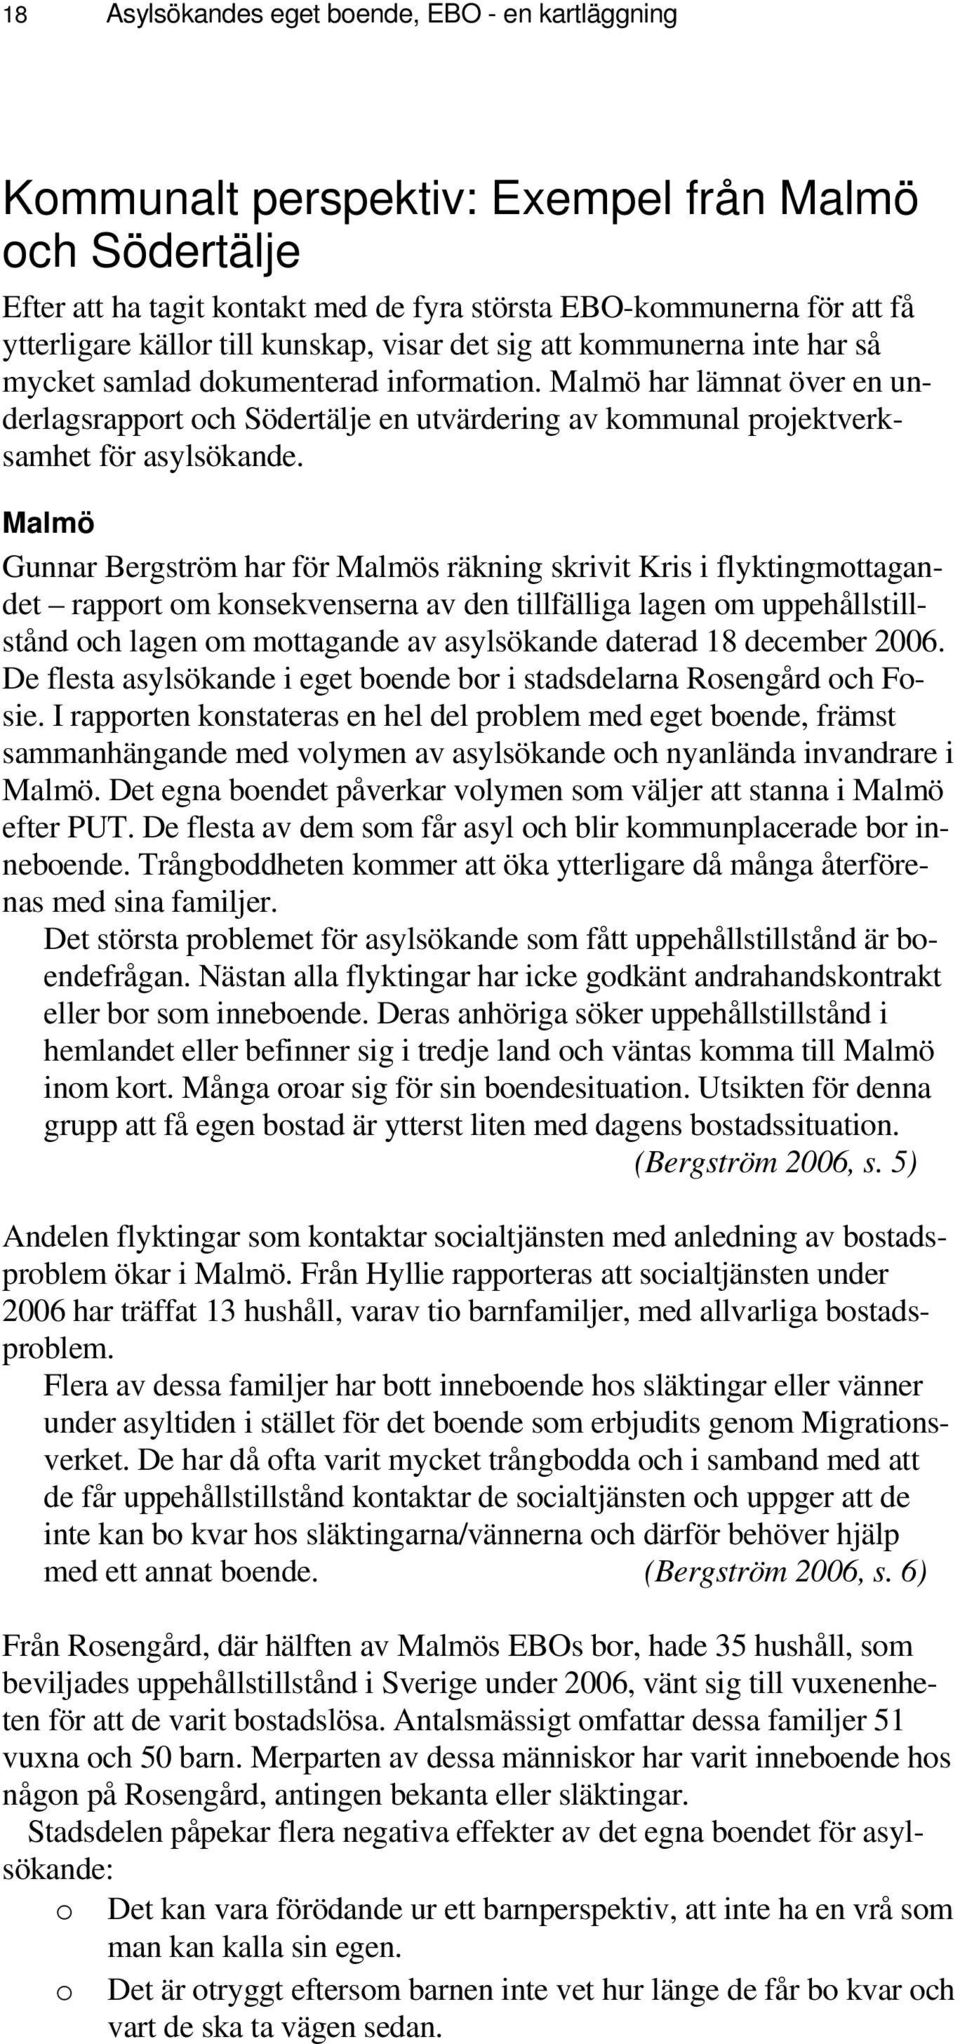 Malmö har lämnat över en underlagsrapport och Södertälje en utvärdering av kommunal projektverksamhet för asylsökande.